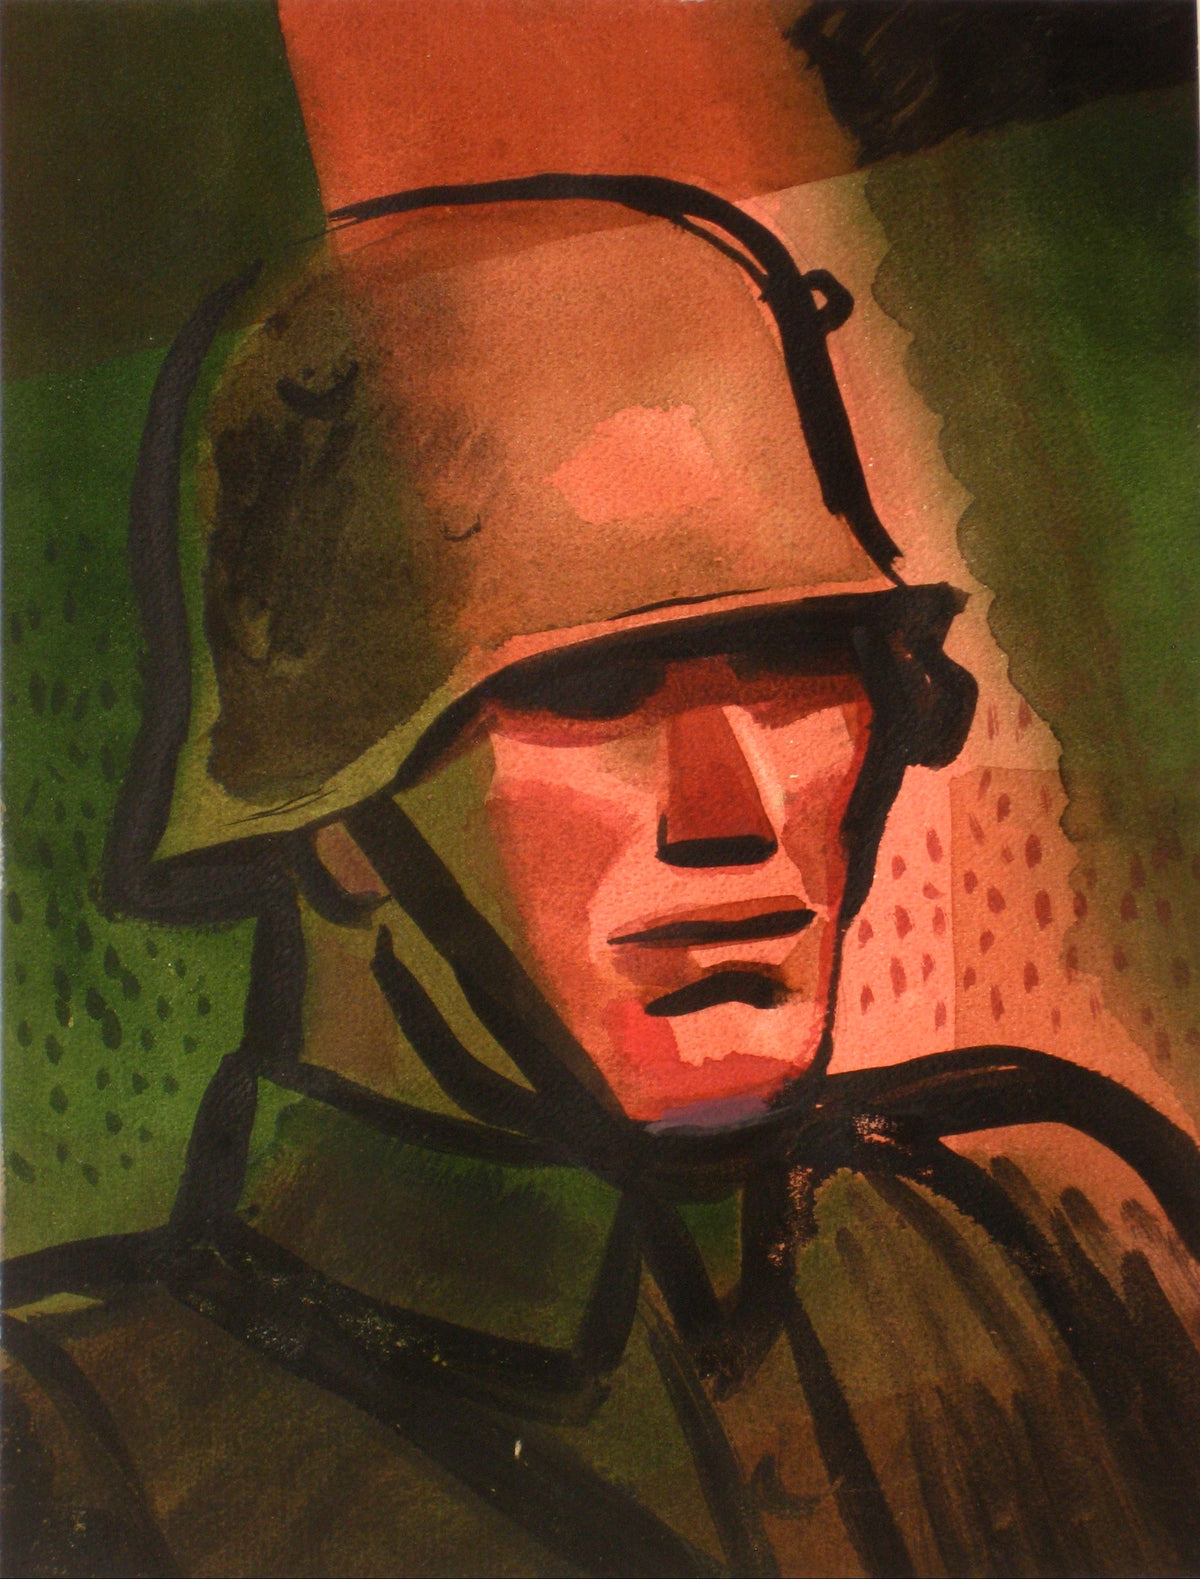 Portrait of a Soldier&lt;br&gt;1930-60s Watercolor&lt;br&gt;&lt;br&gt;#13379